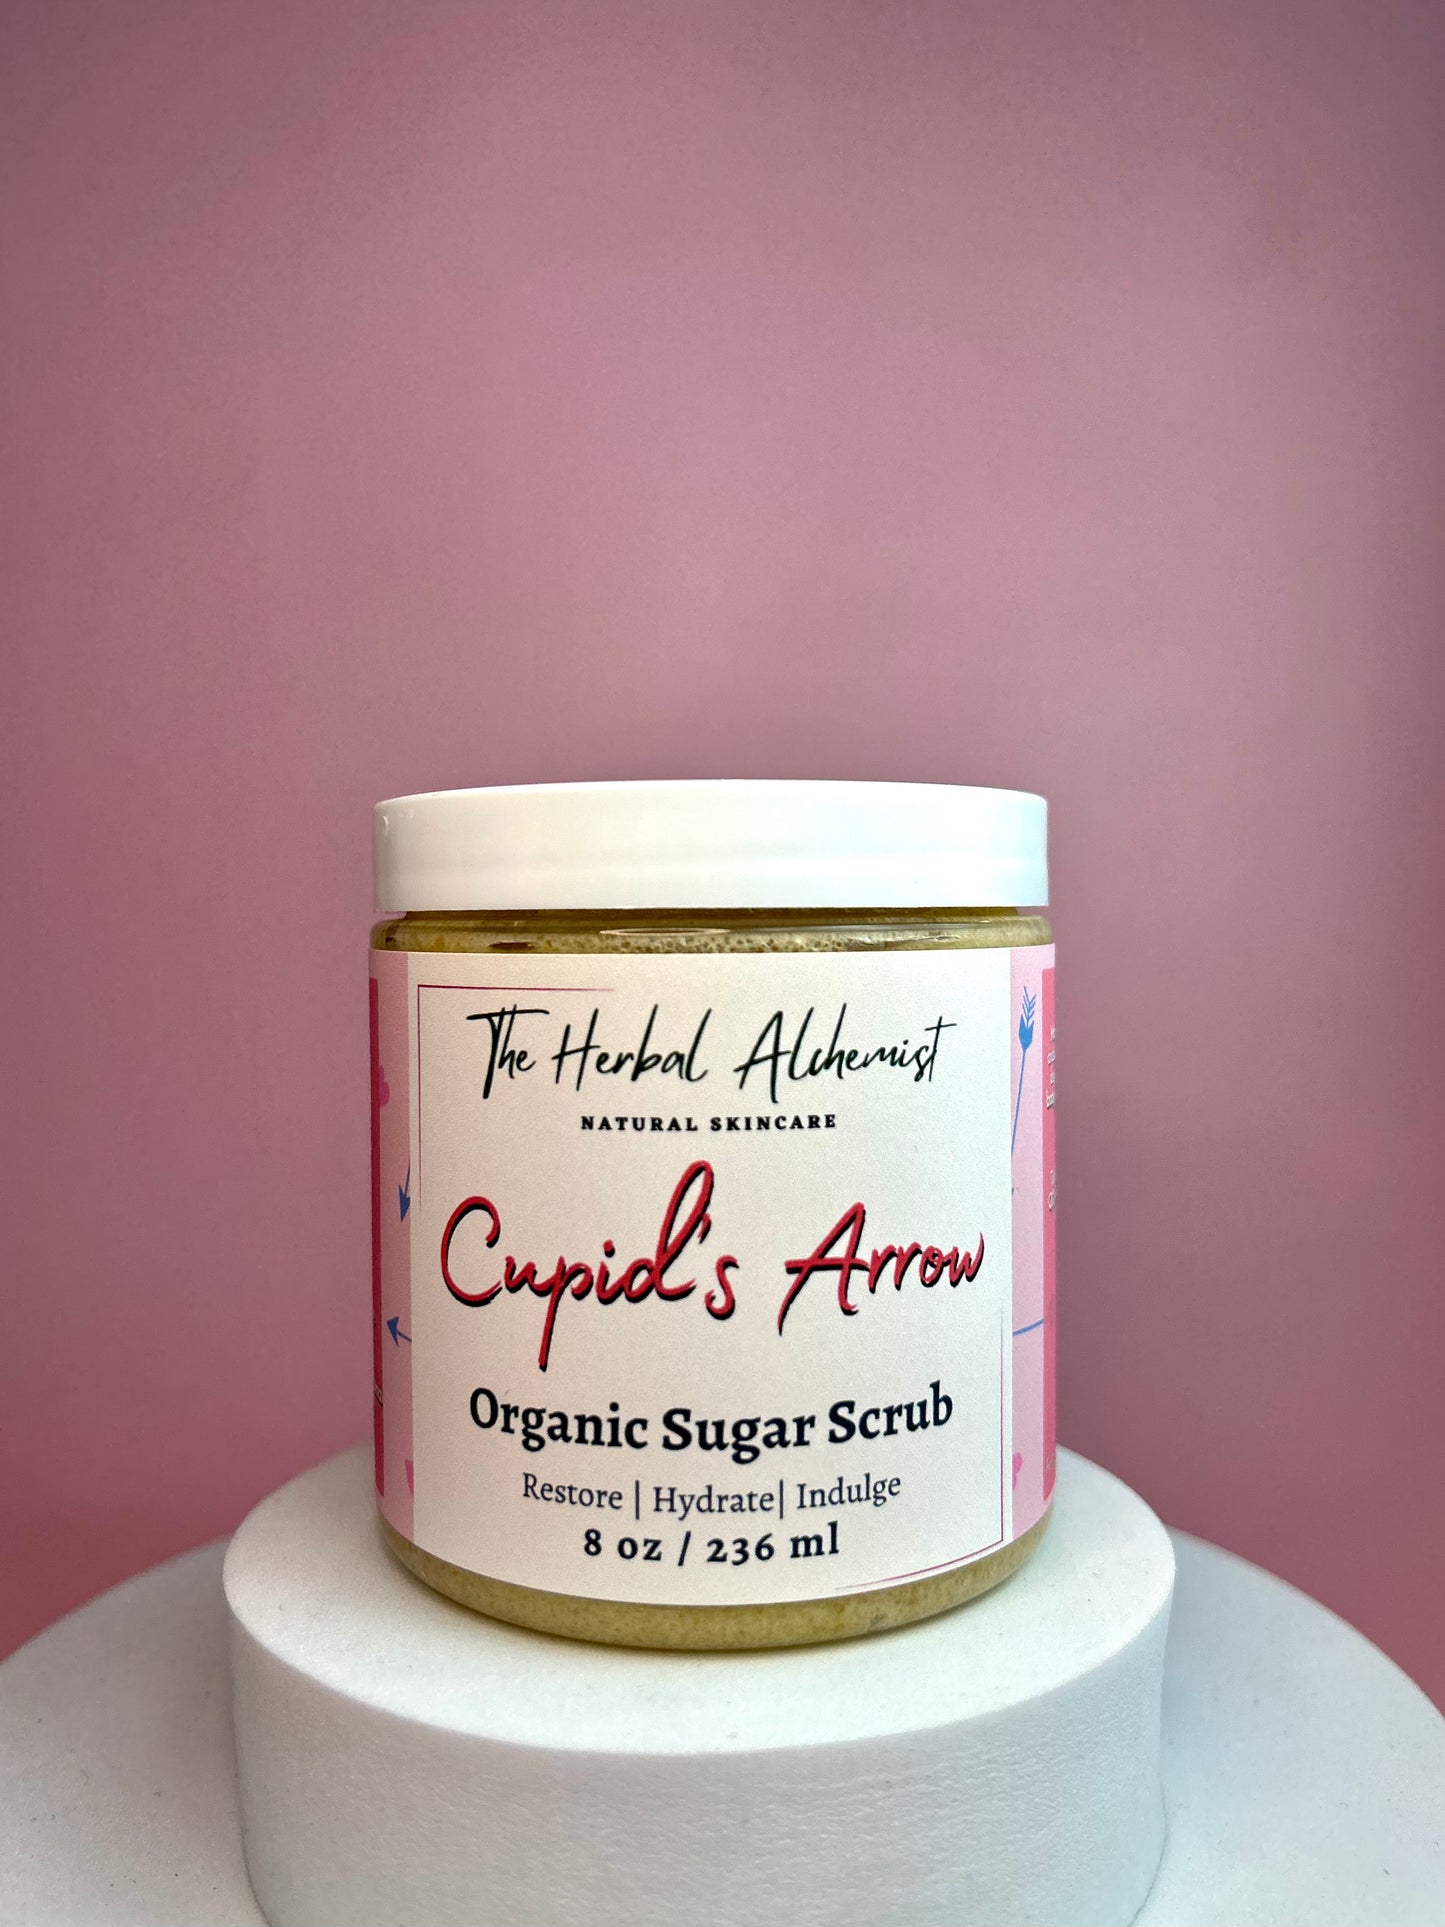 Cupid's Arrow Organic Sugar Scrub